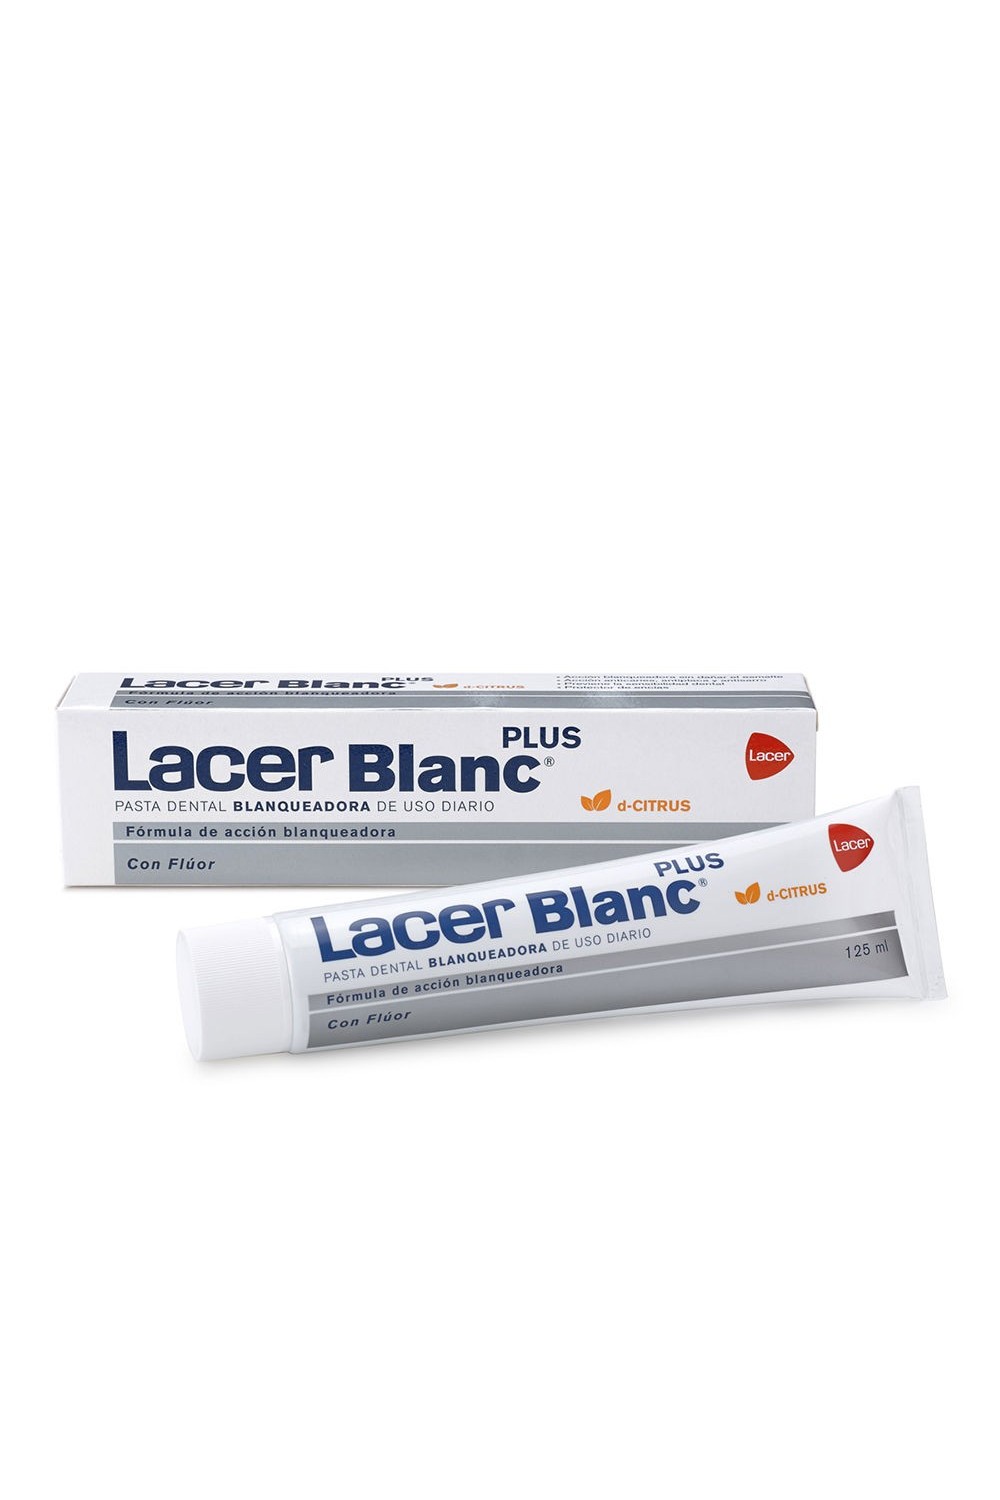 Lacer Lacerblanc Plus D Citrus  125ml